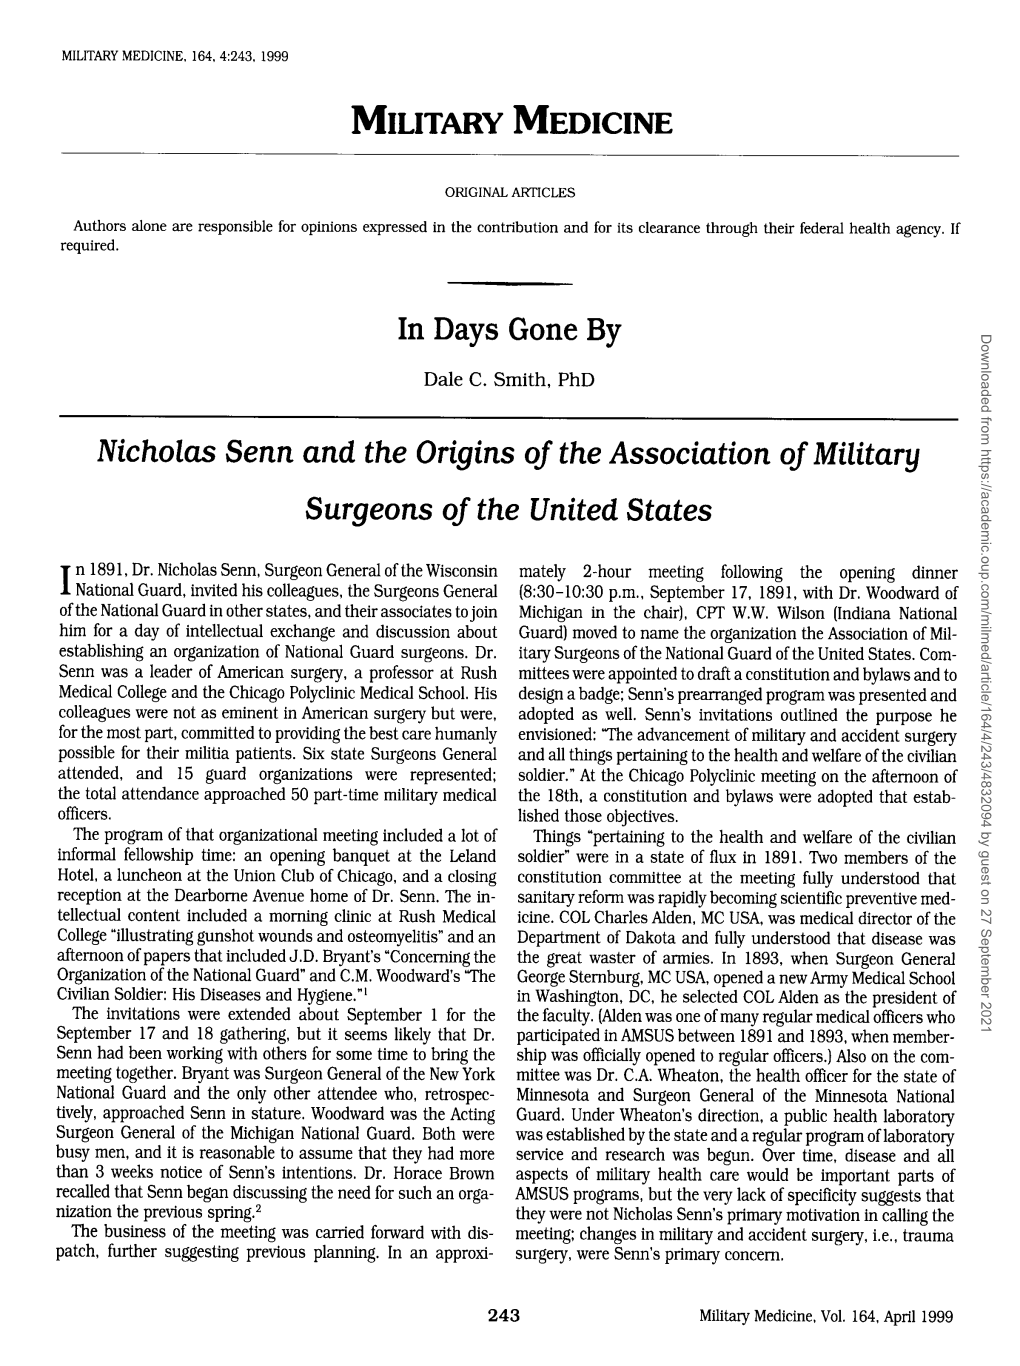 Nicholas Senn and the Origins Oj the Association Ojmilitary Surgeons Oj the United States